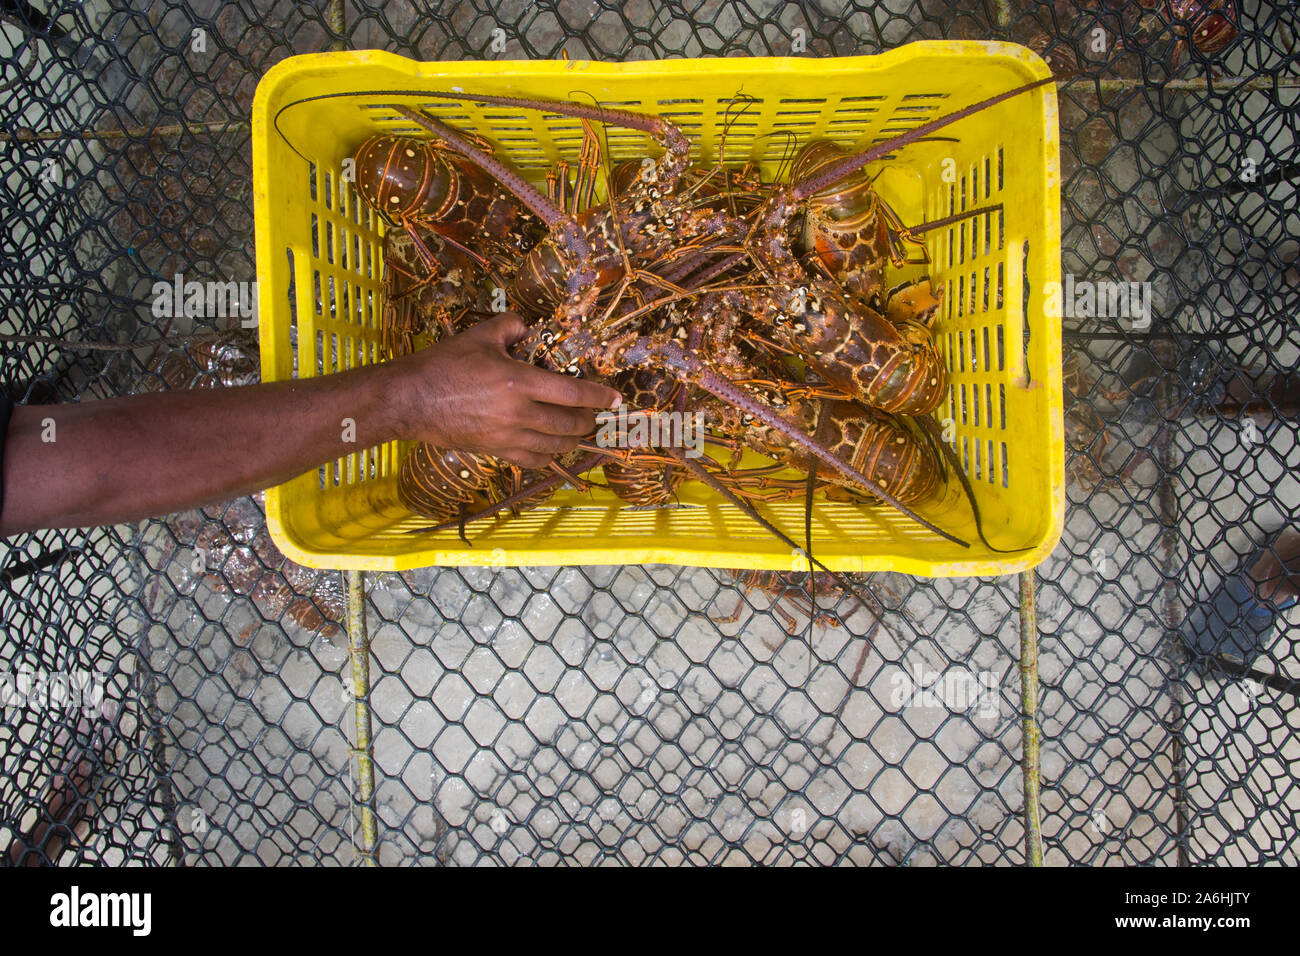 Un homme éjacule langouste fraîchement pêché durant la saison régulière pour l'exploitation du homard Homard Floride LOS ROQUES AU VENEZUELA. Banque D'Images